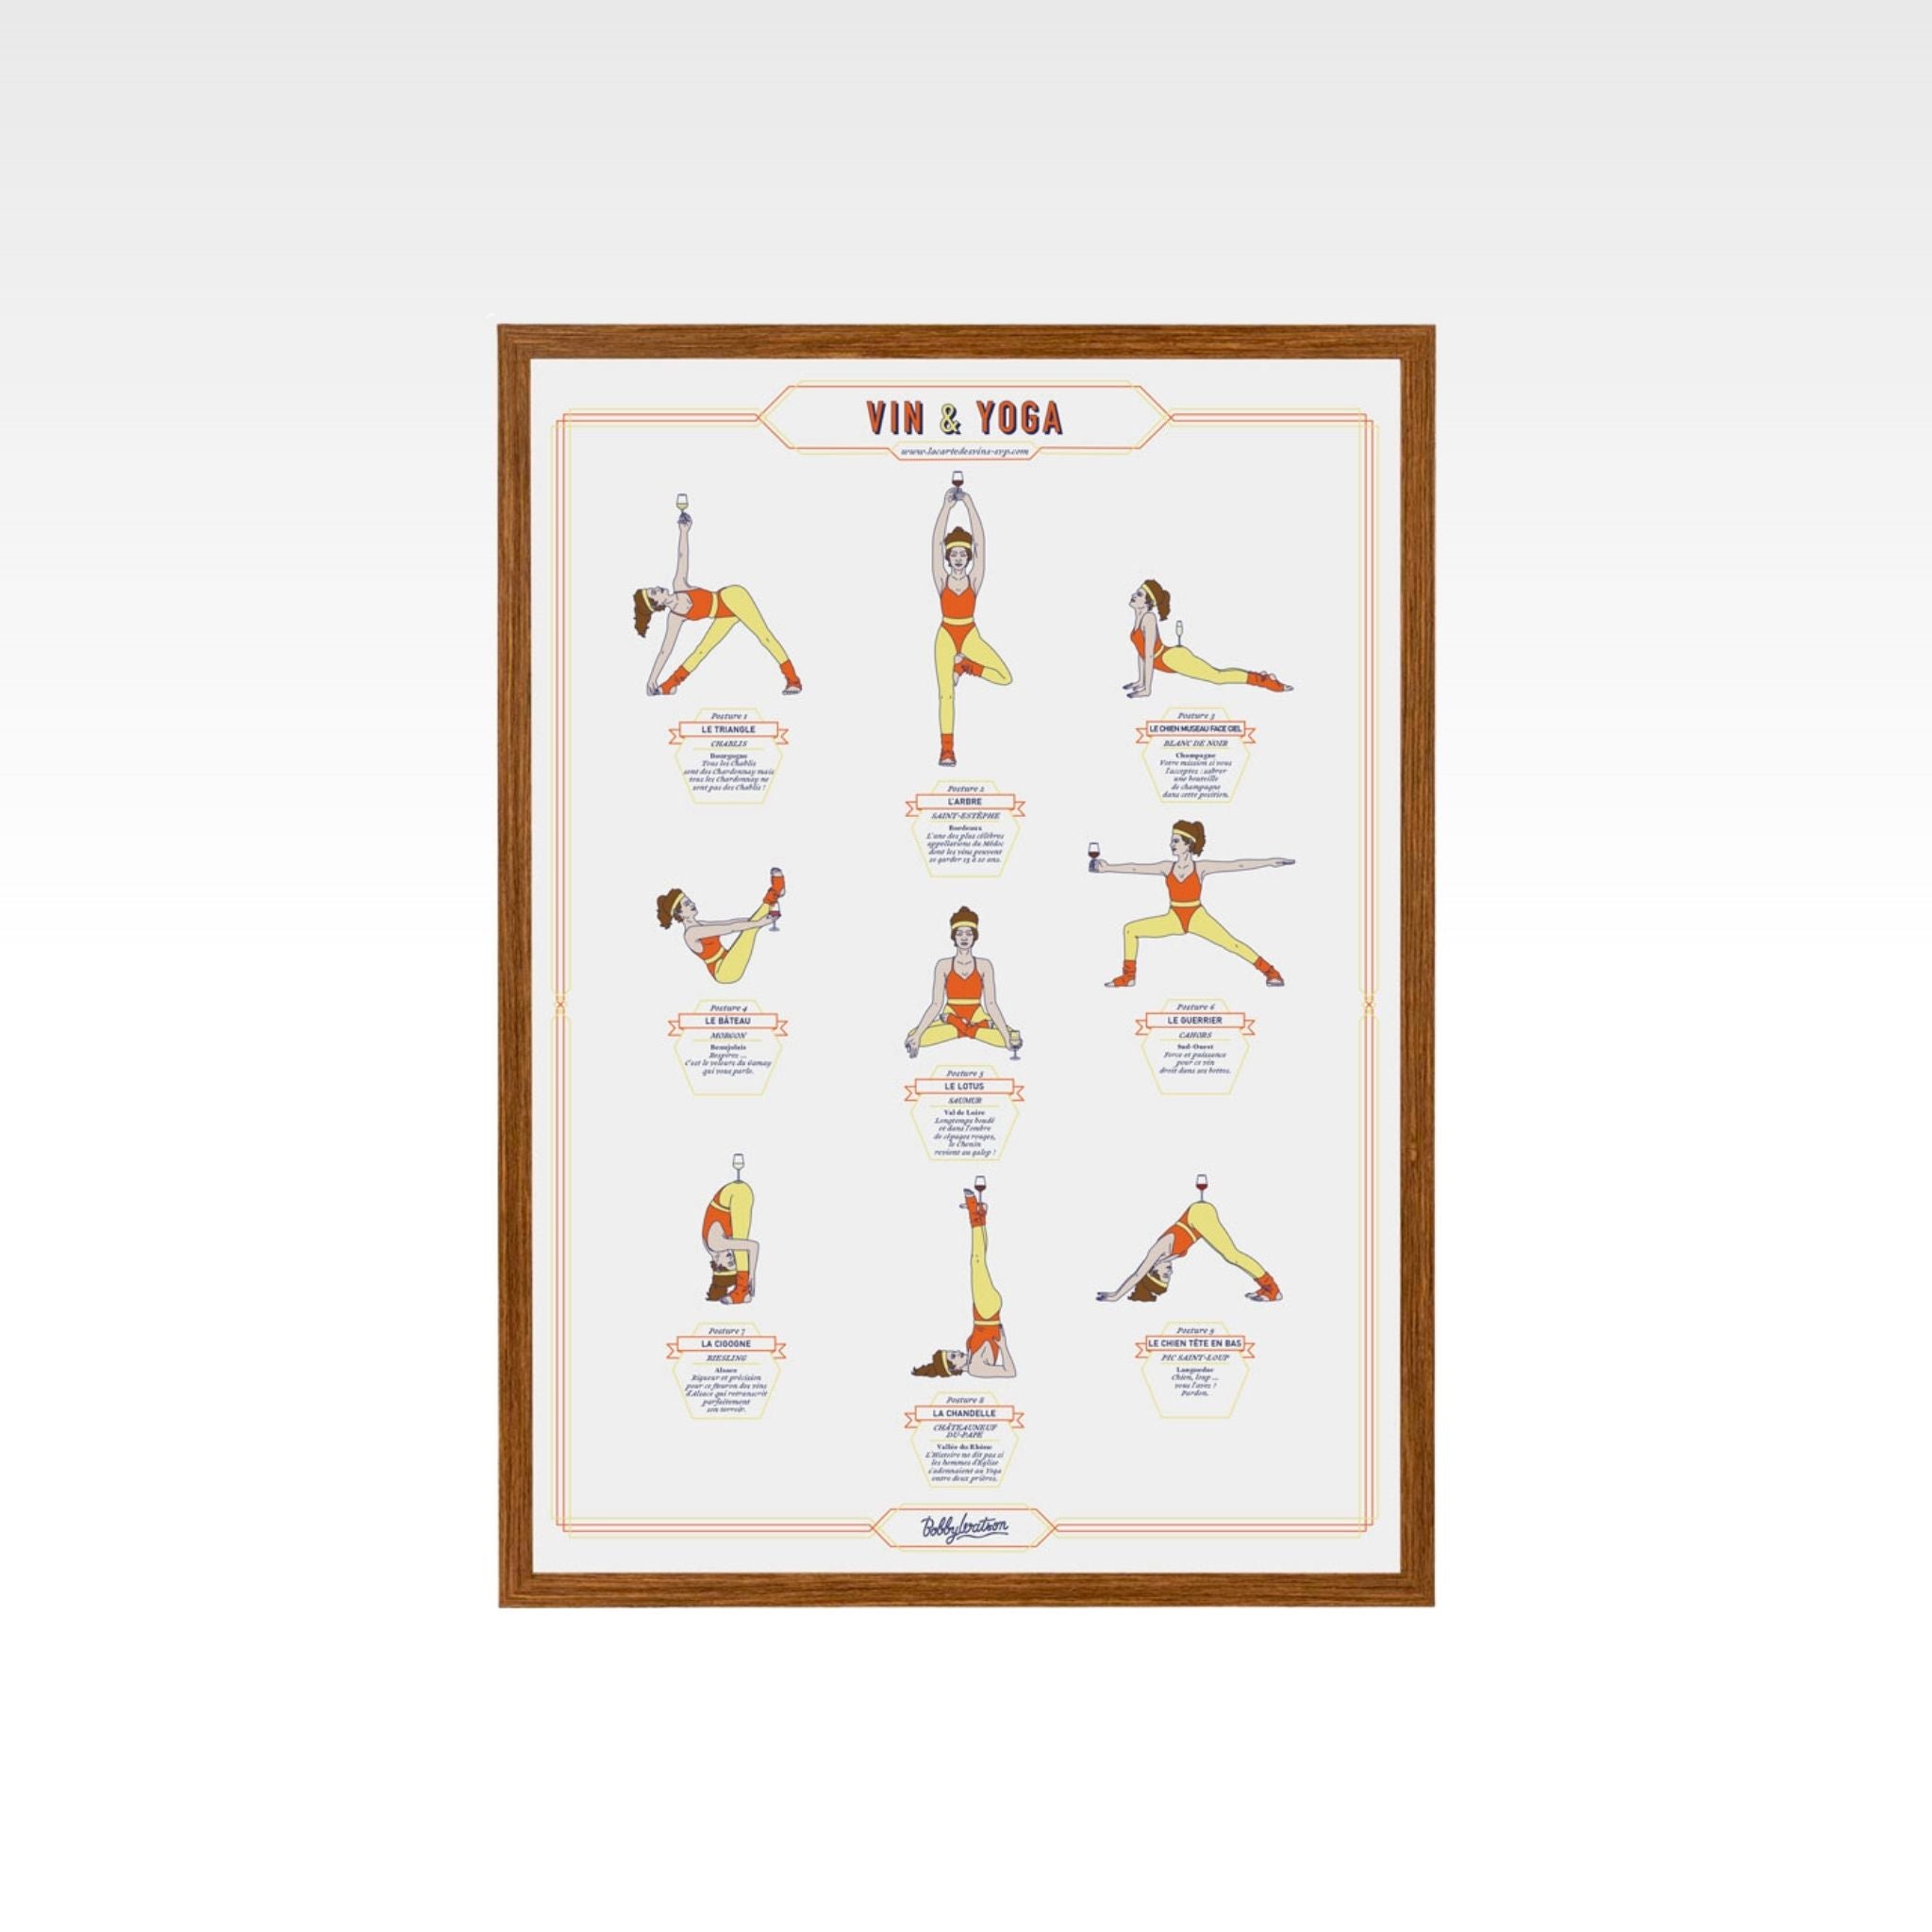 Affiche "Vin et yoga" - La carte des vins SVP